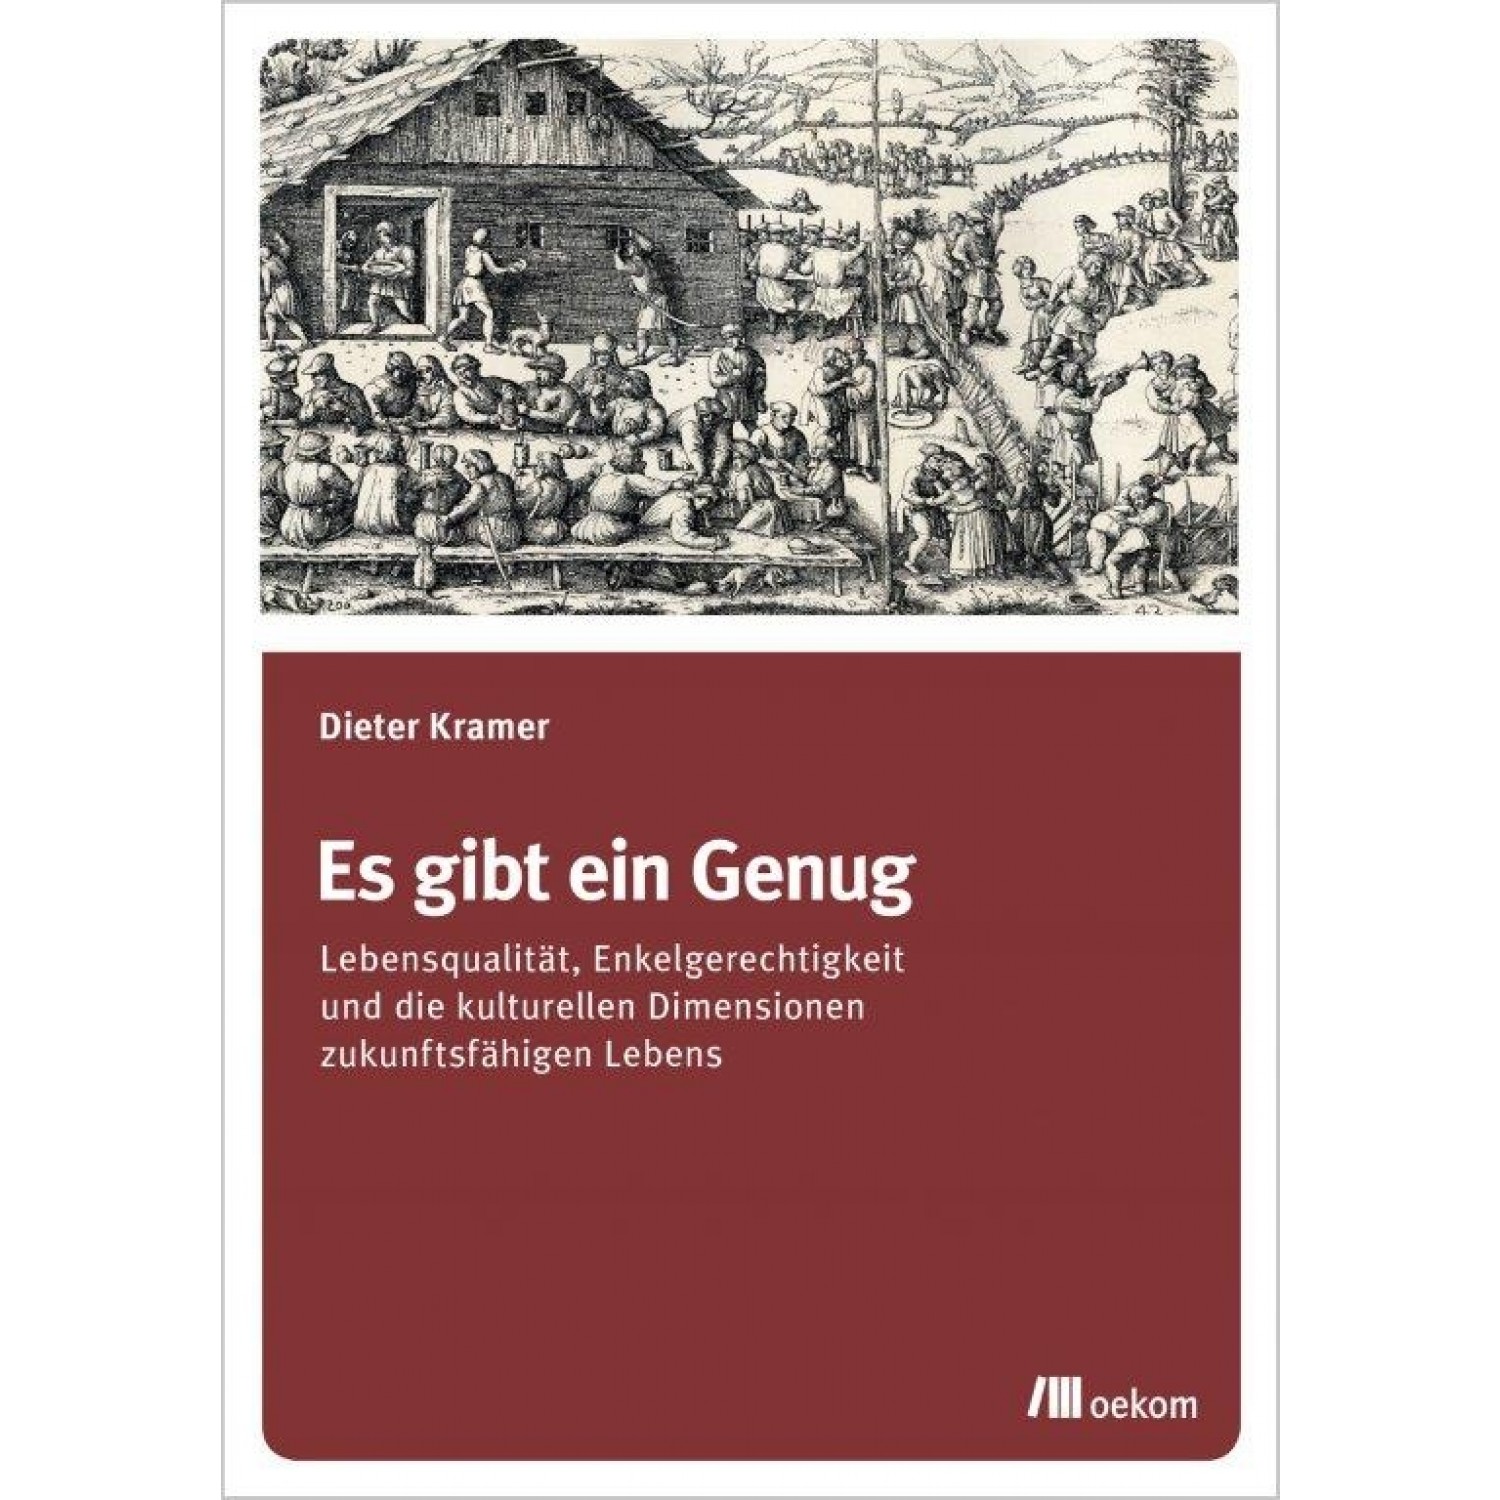 Es gibt ein Genug - German eco book | oekom publisher